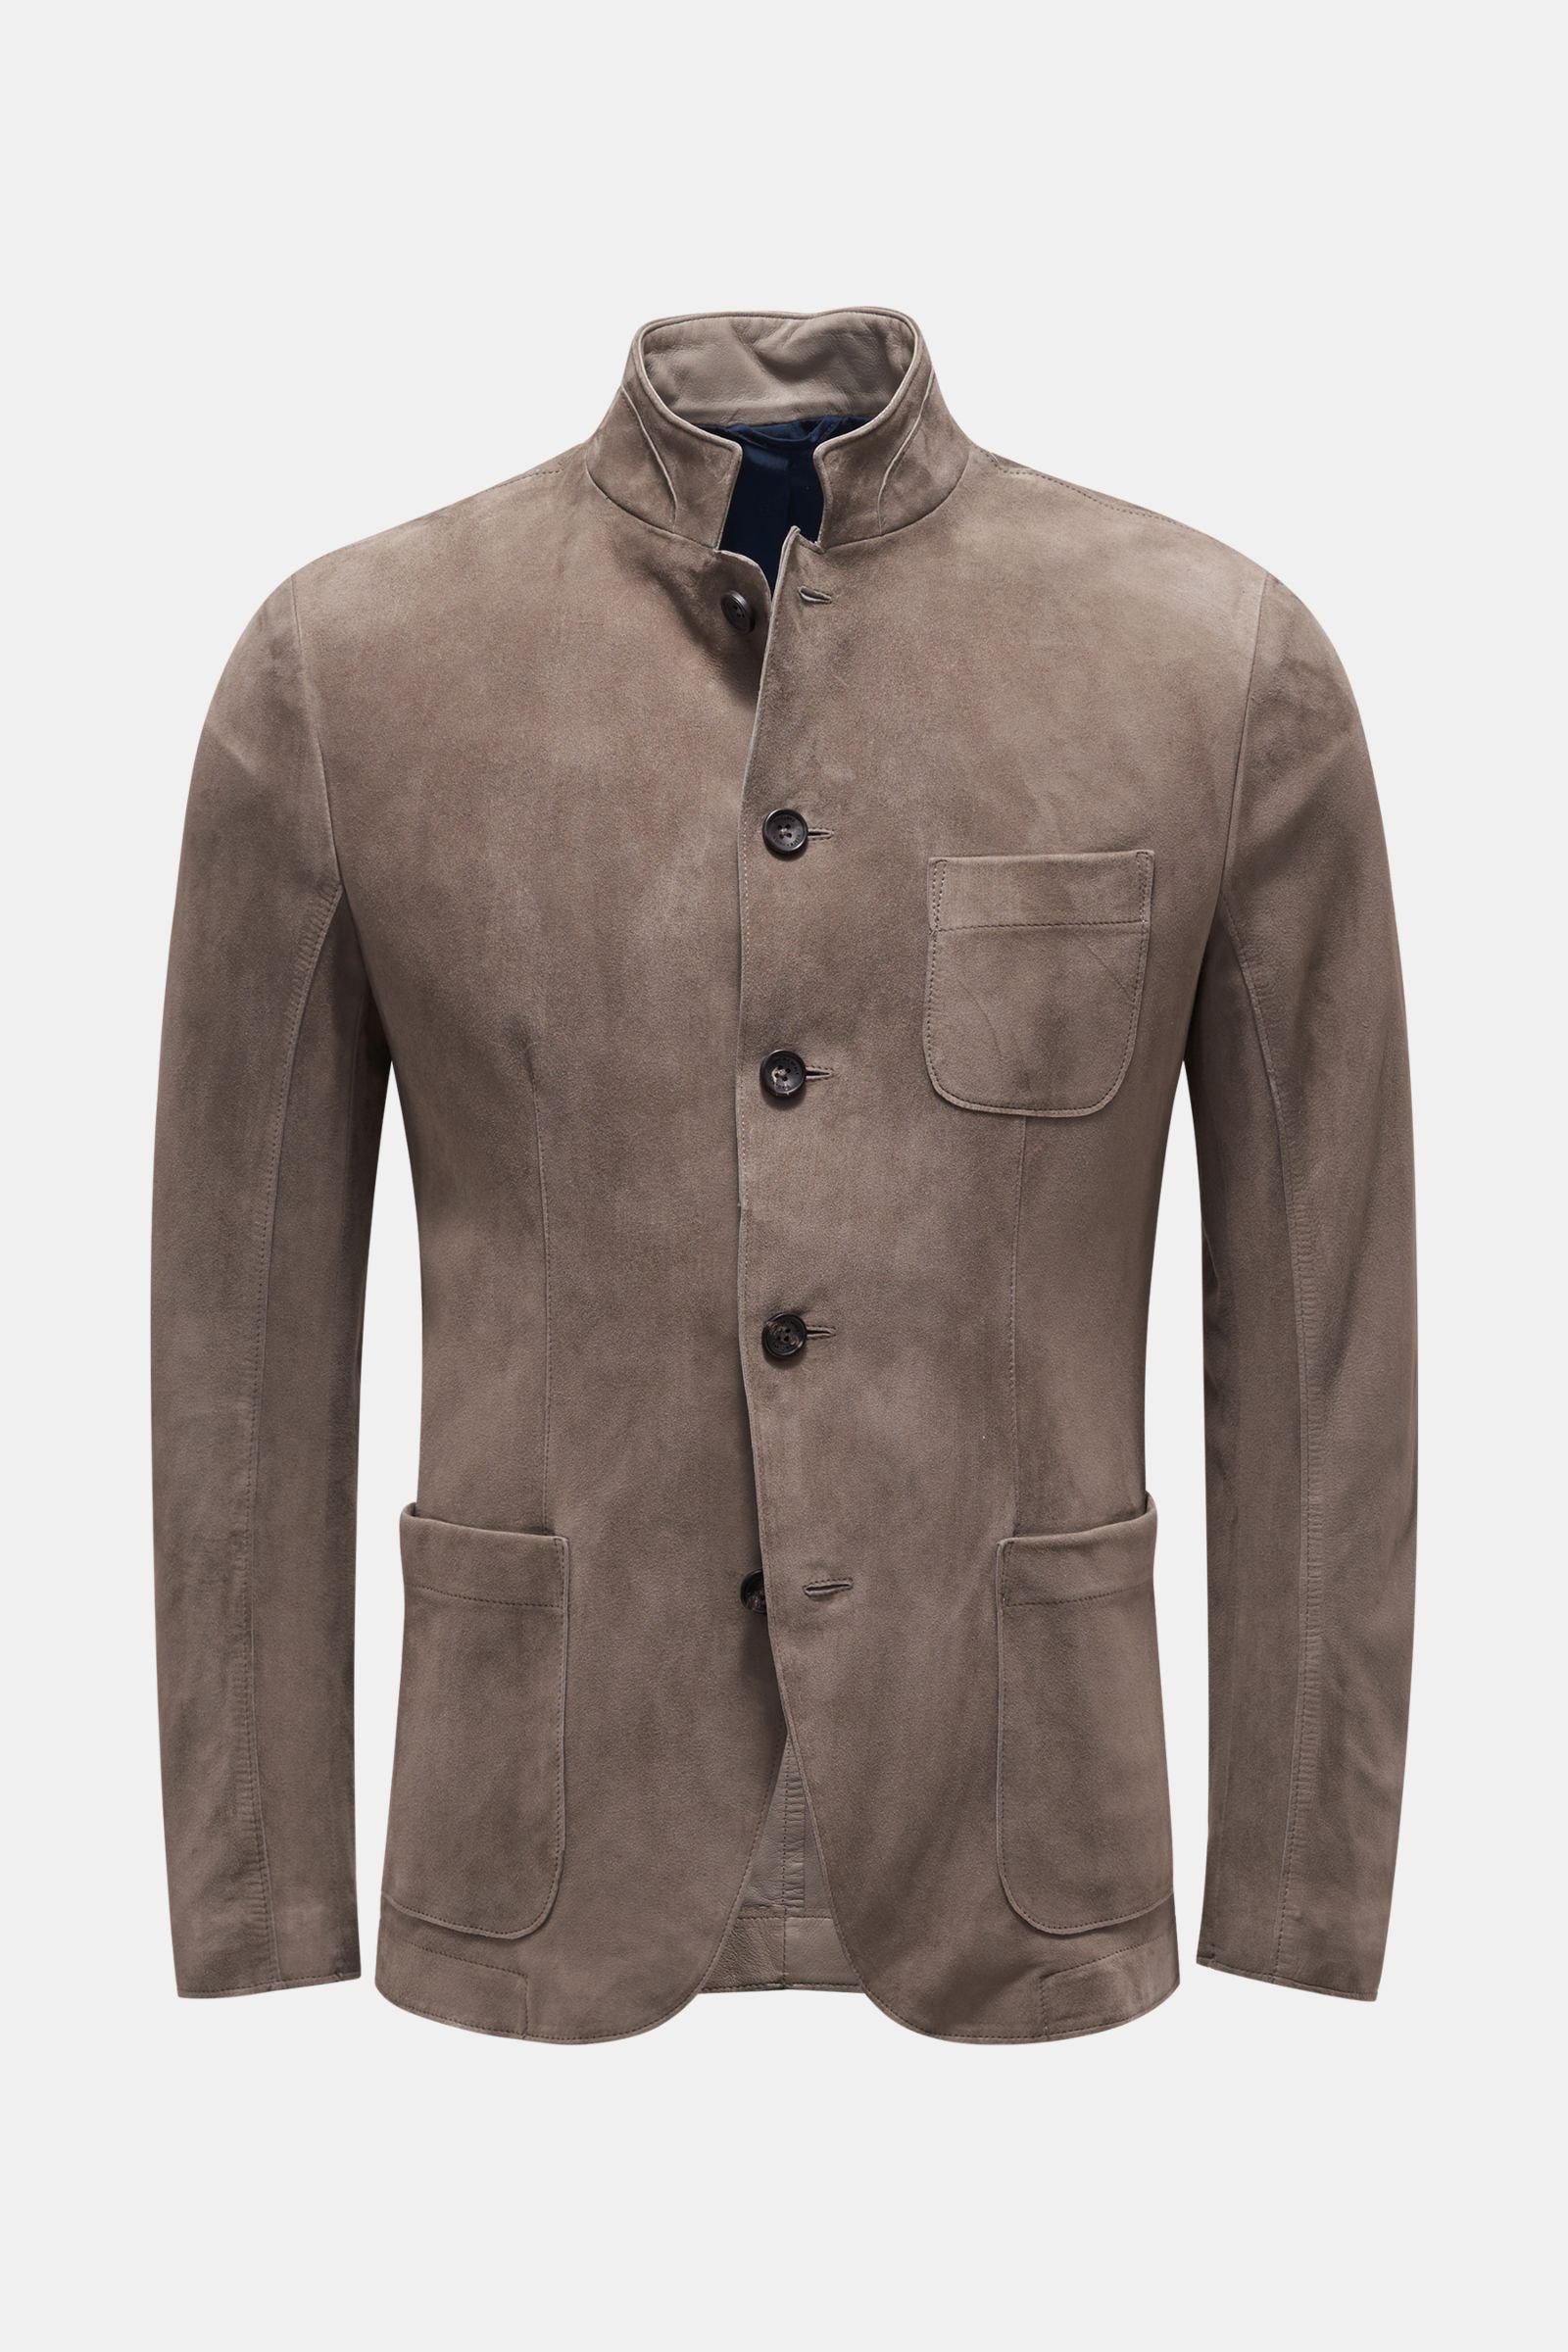 Suede smart-casual jacket grey-brown